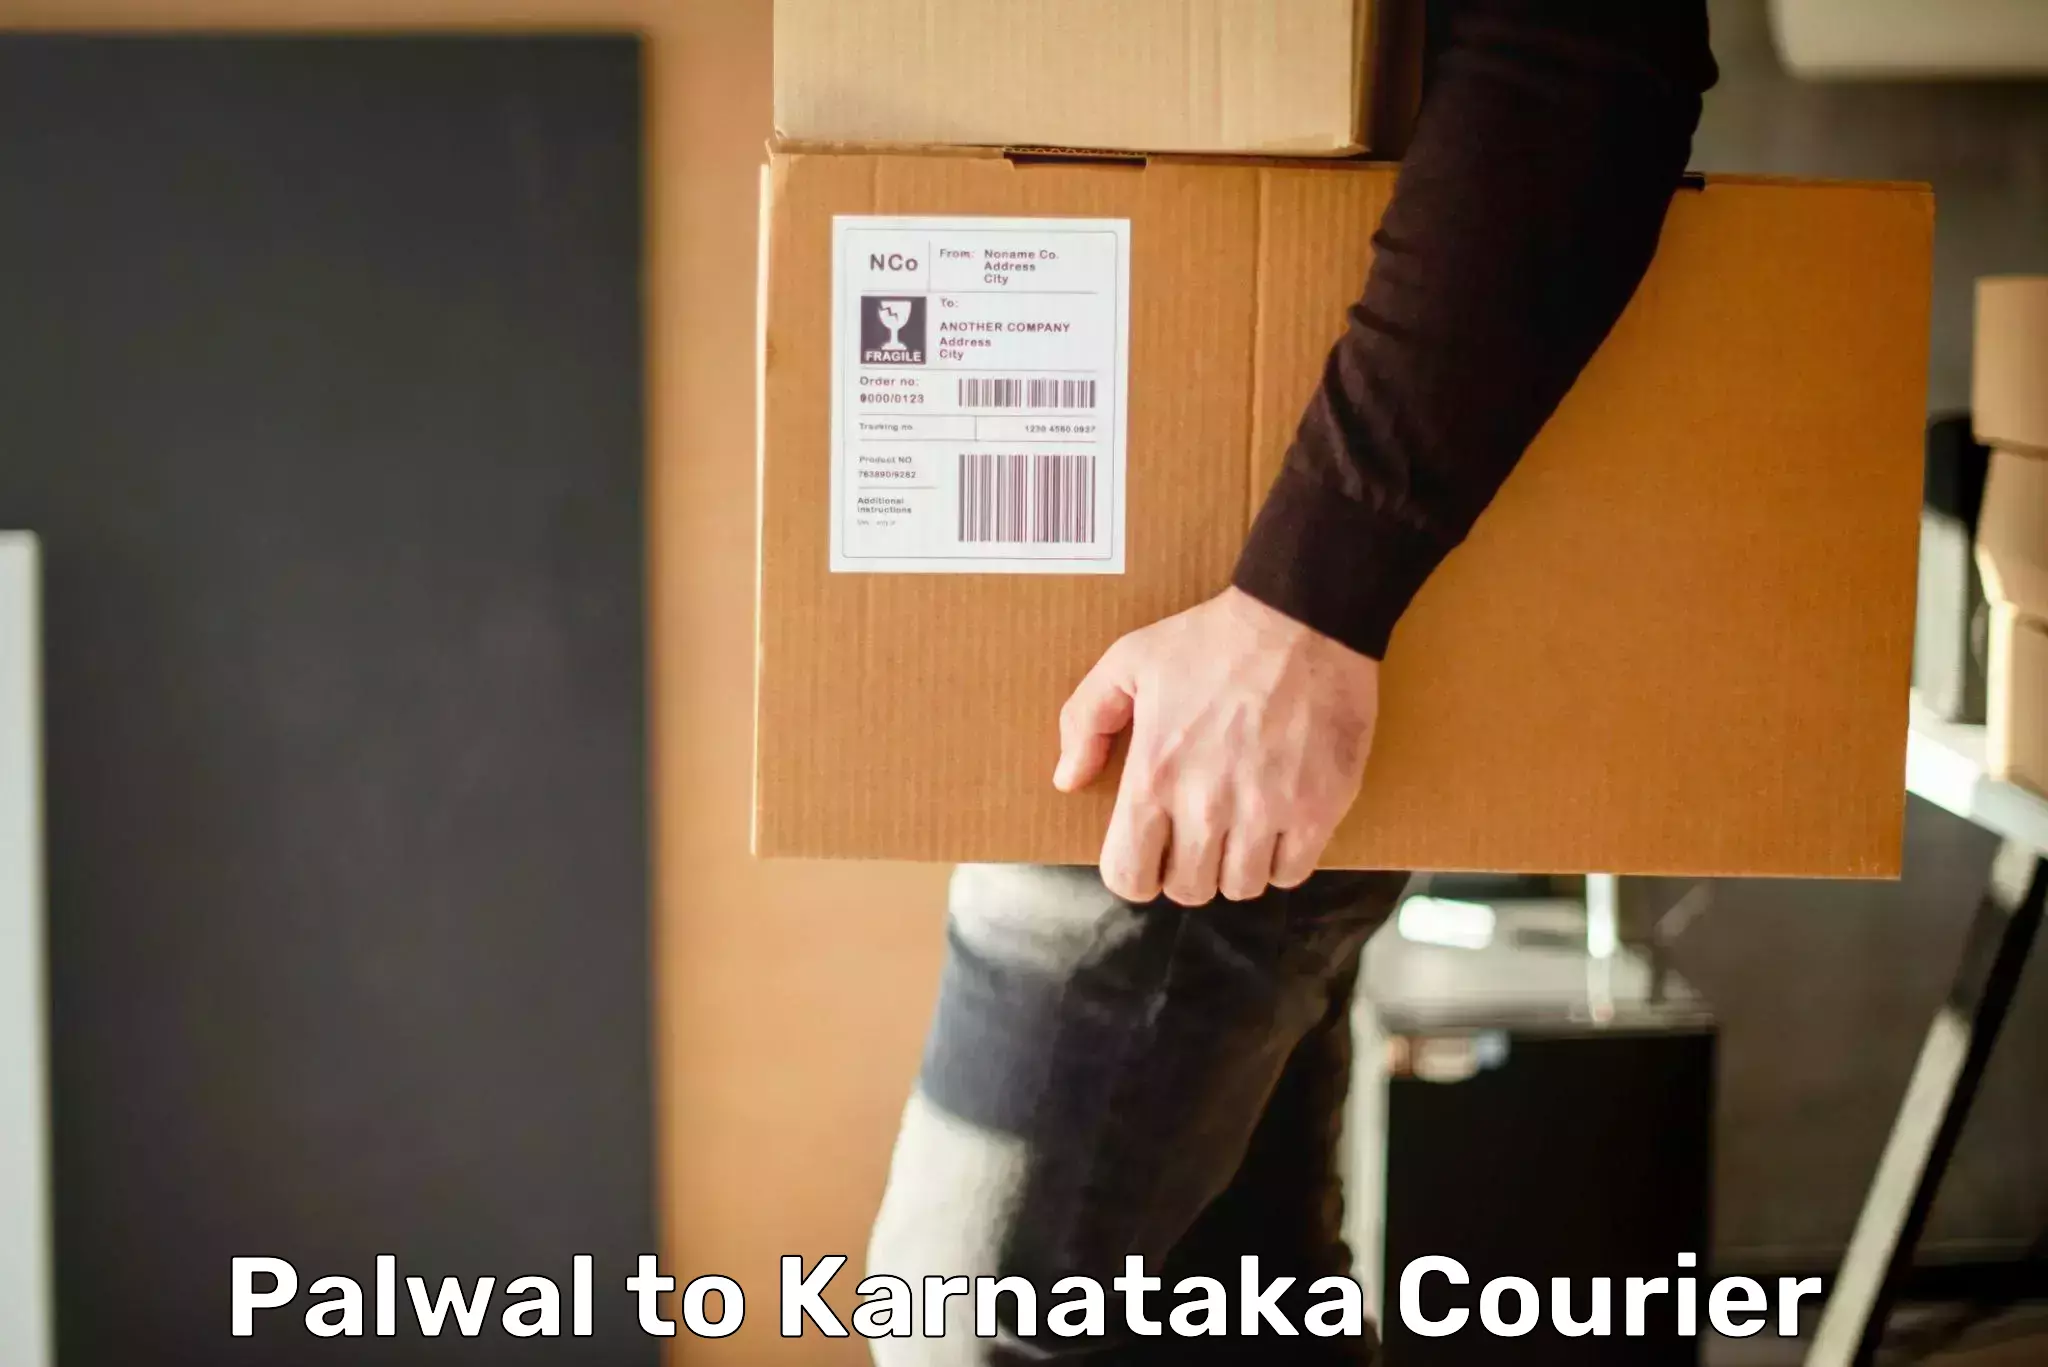 Efficient shipping operations Palwal to Karnataka